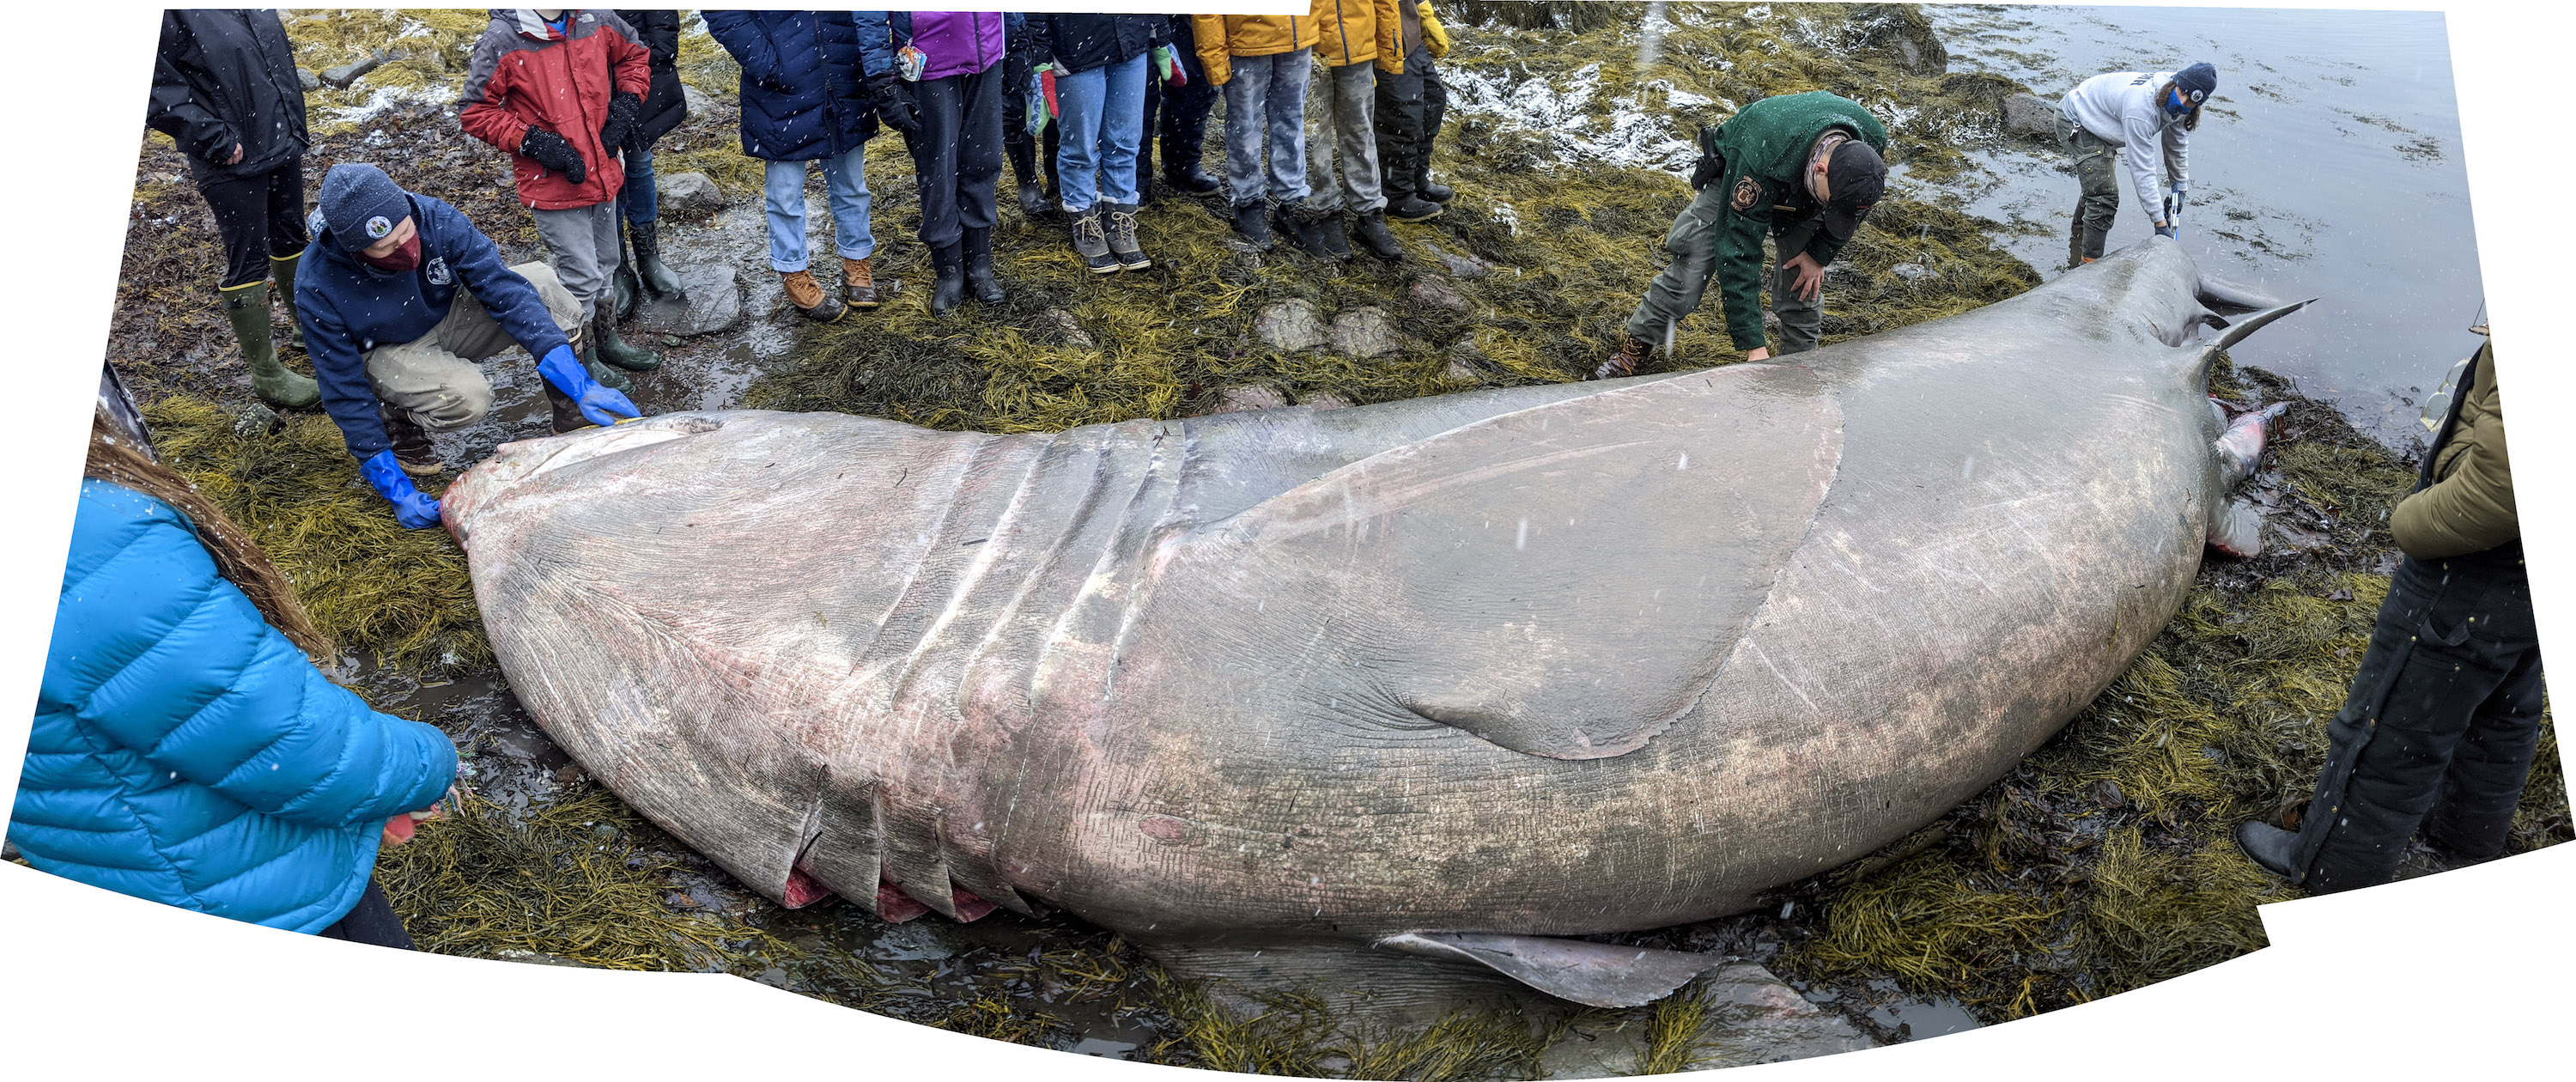 Tiburón peregrino del tamaño de un camioneta apareció en una playa de Maine.